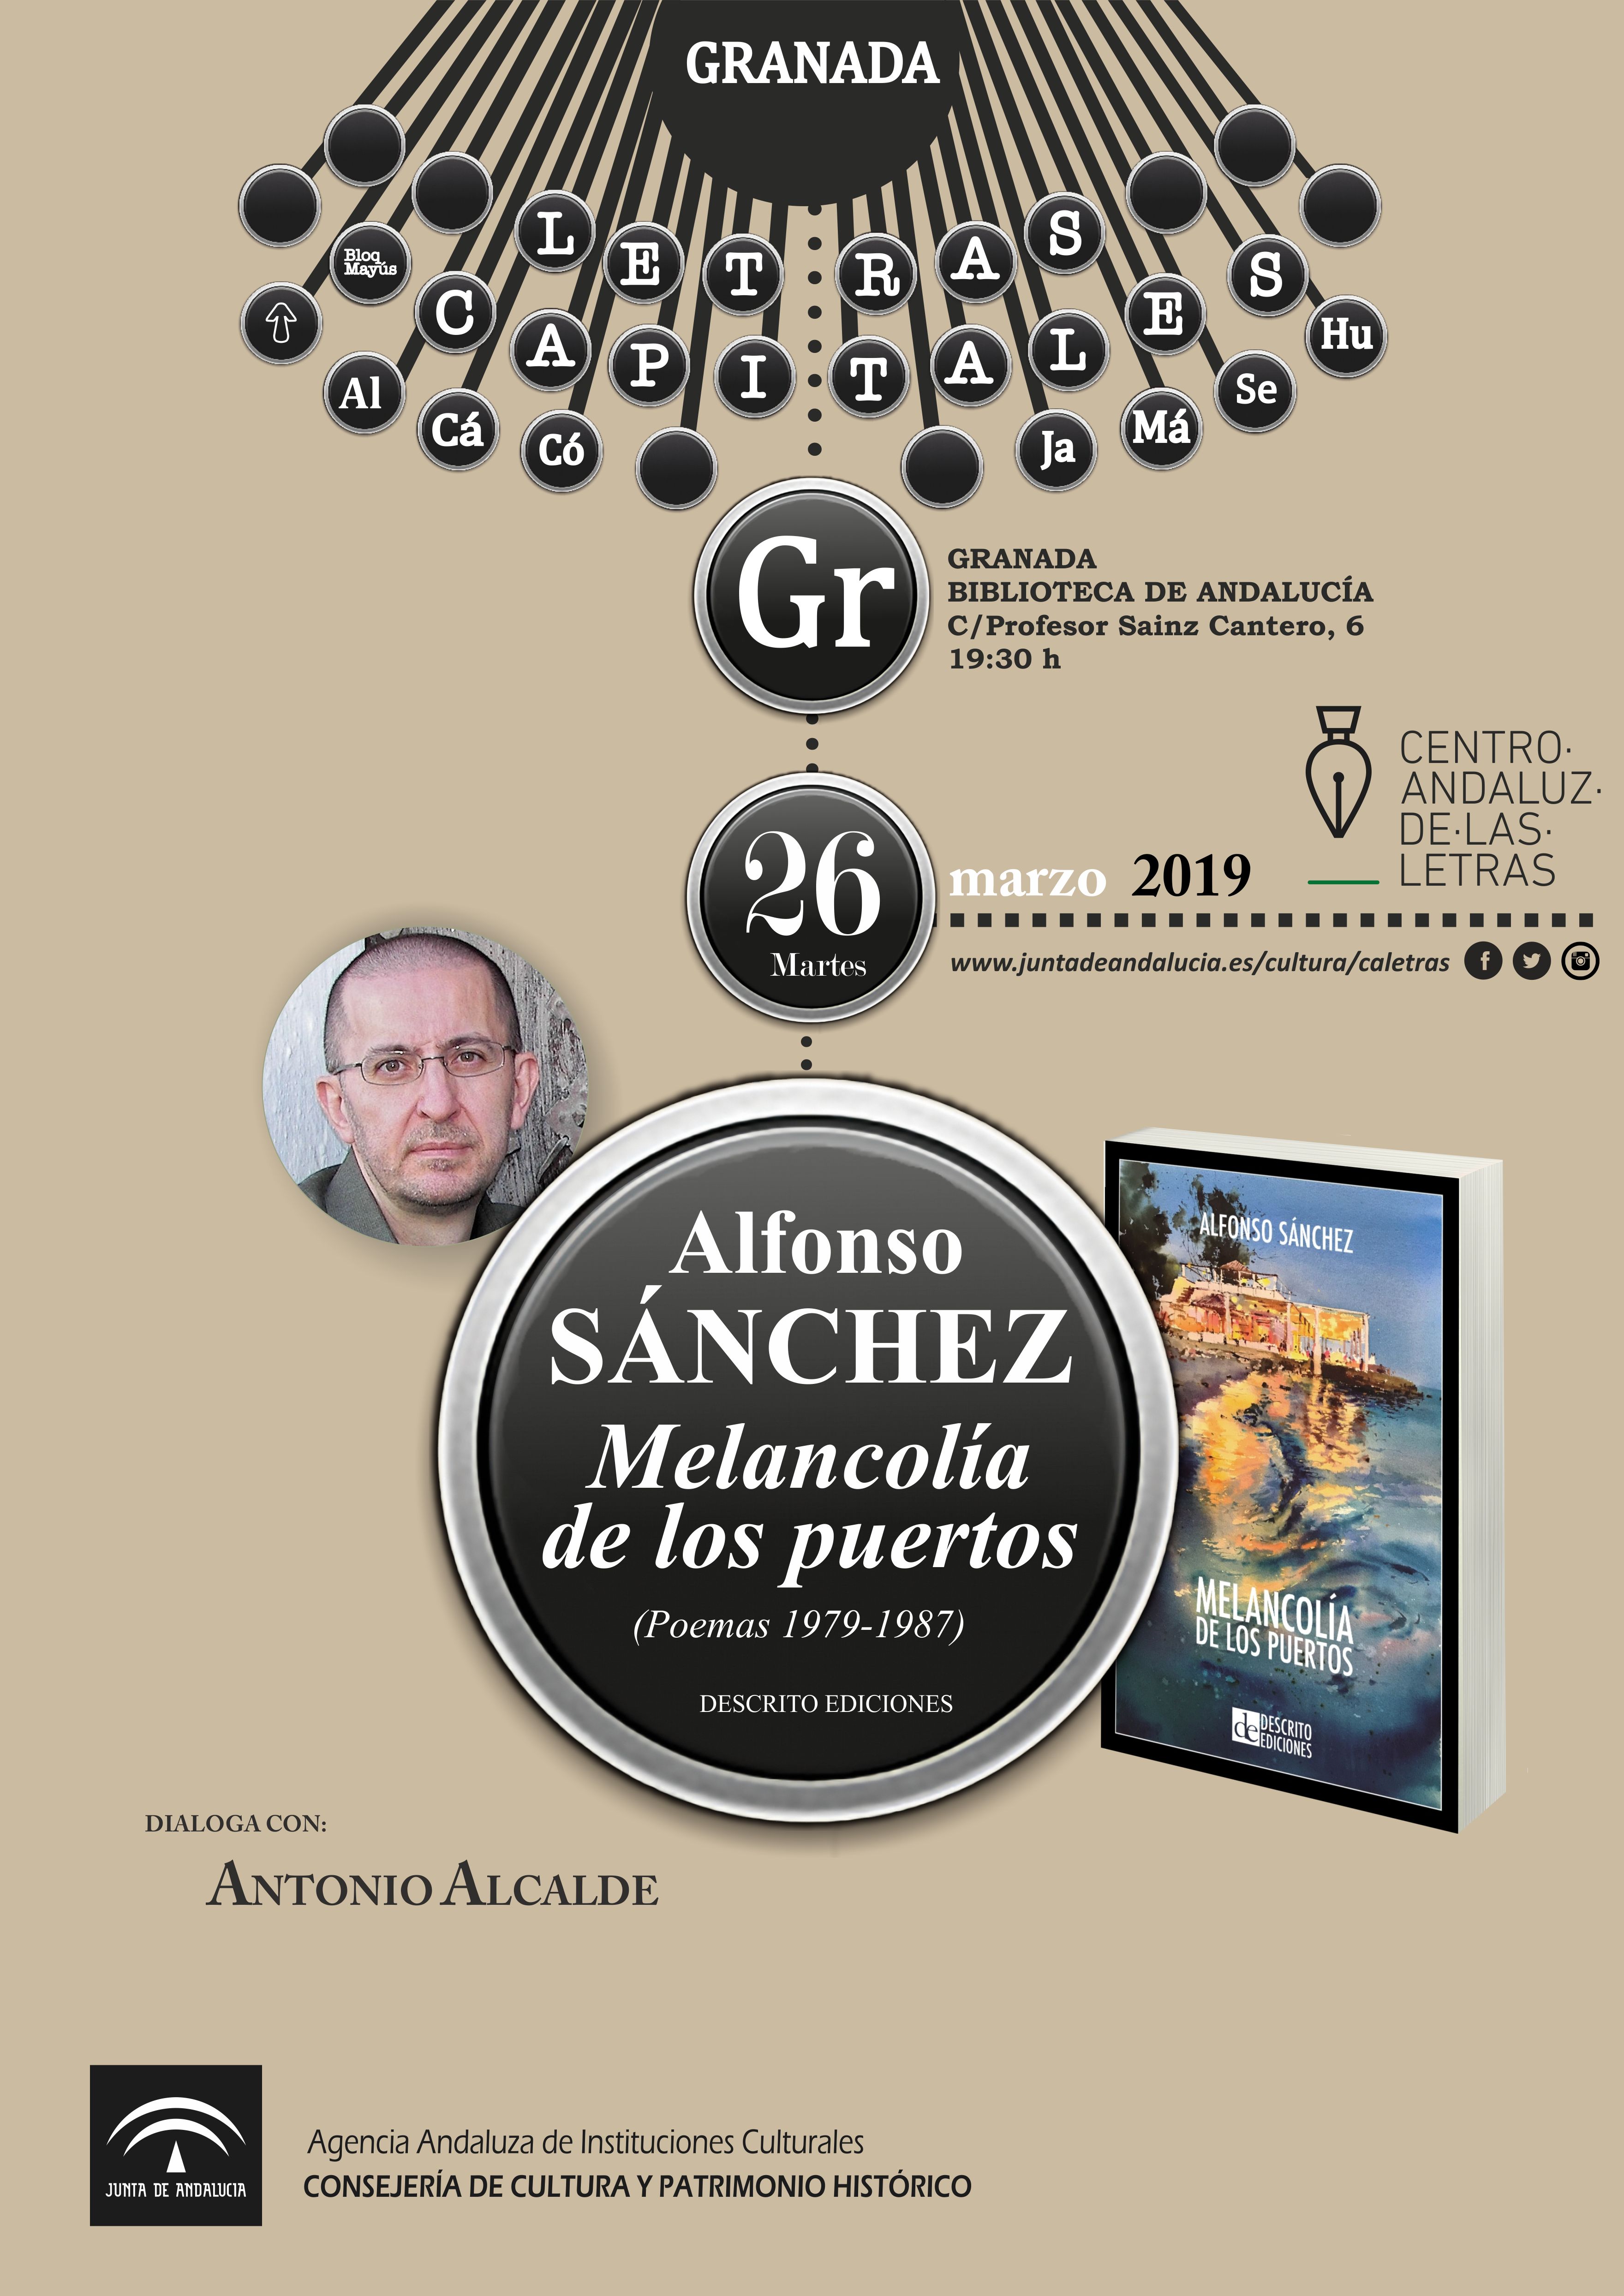 El Centro Andaluz de las Letras presenta en Granada el poemario ‘Melancolía de los puertos’, de Alfonso Sánchez